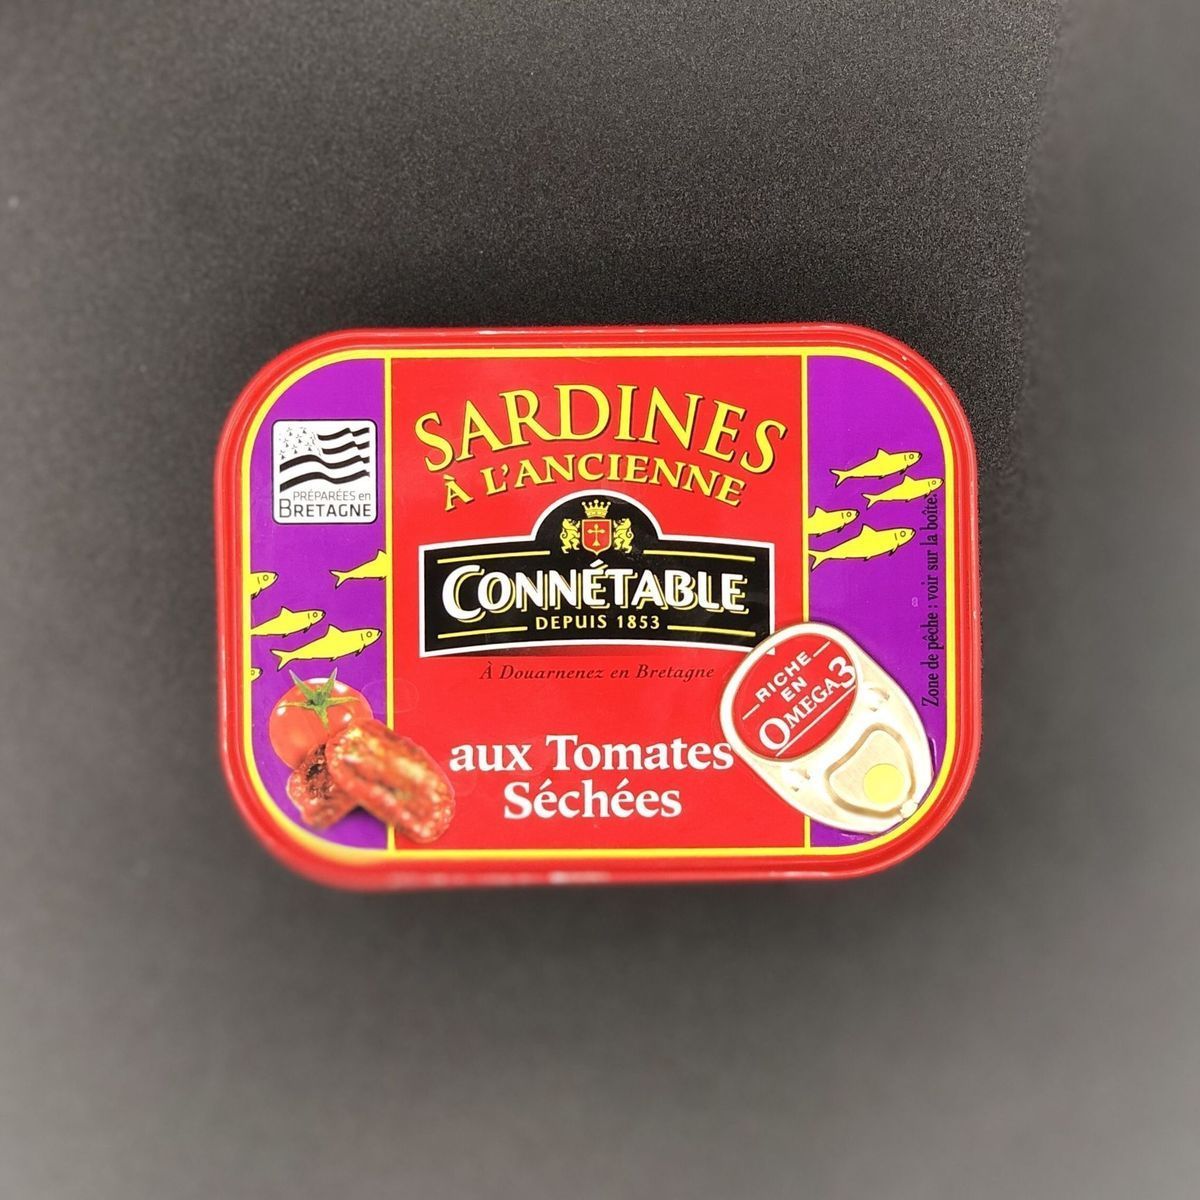 Сардины Connetable в оливковом масле с сушеными томатами 115г